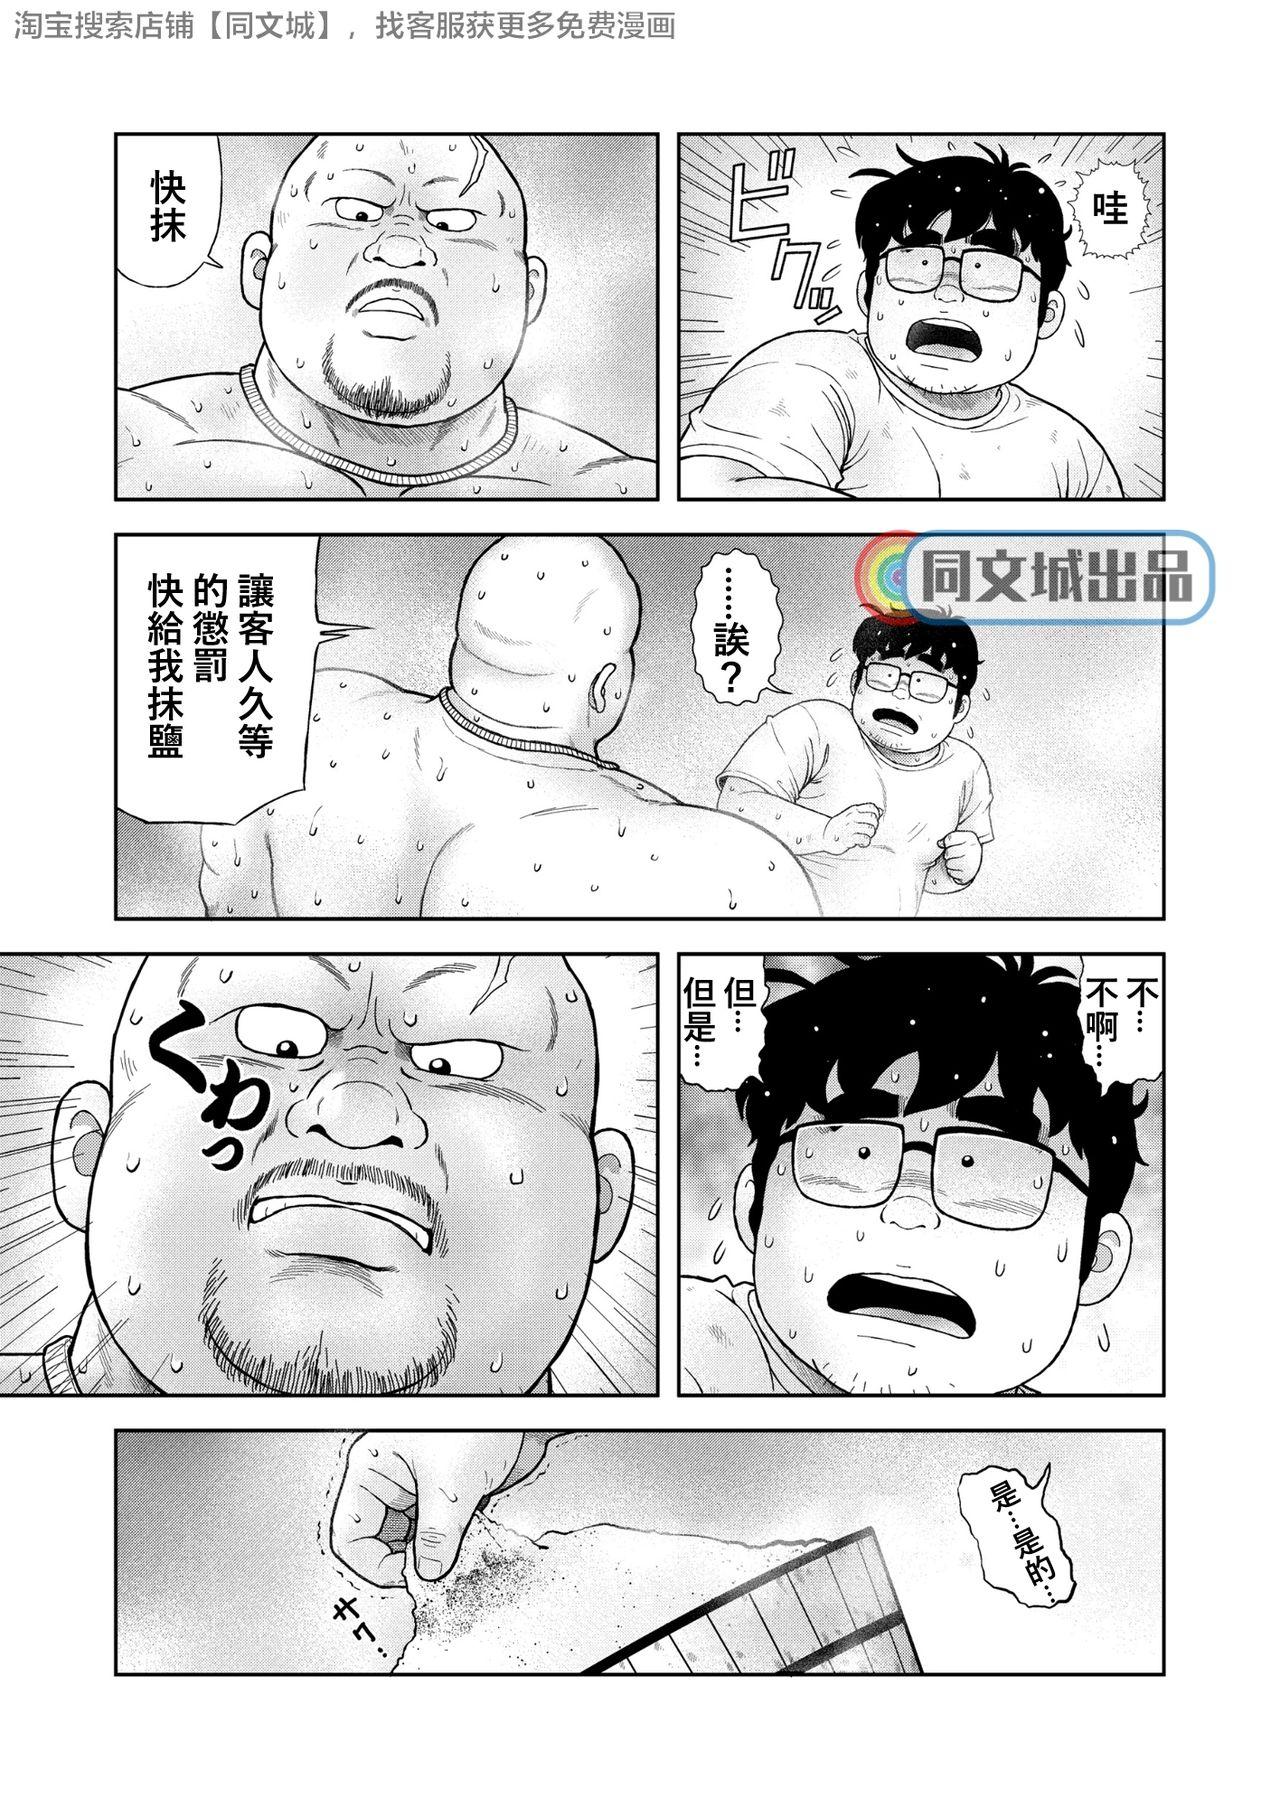 Leche Kunoyu Gohatsume Shinju no Sao - Original Taiwan - Page 7